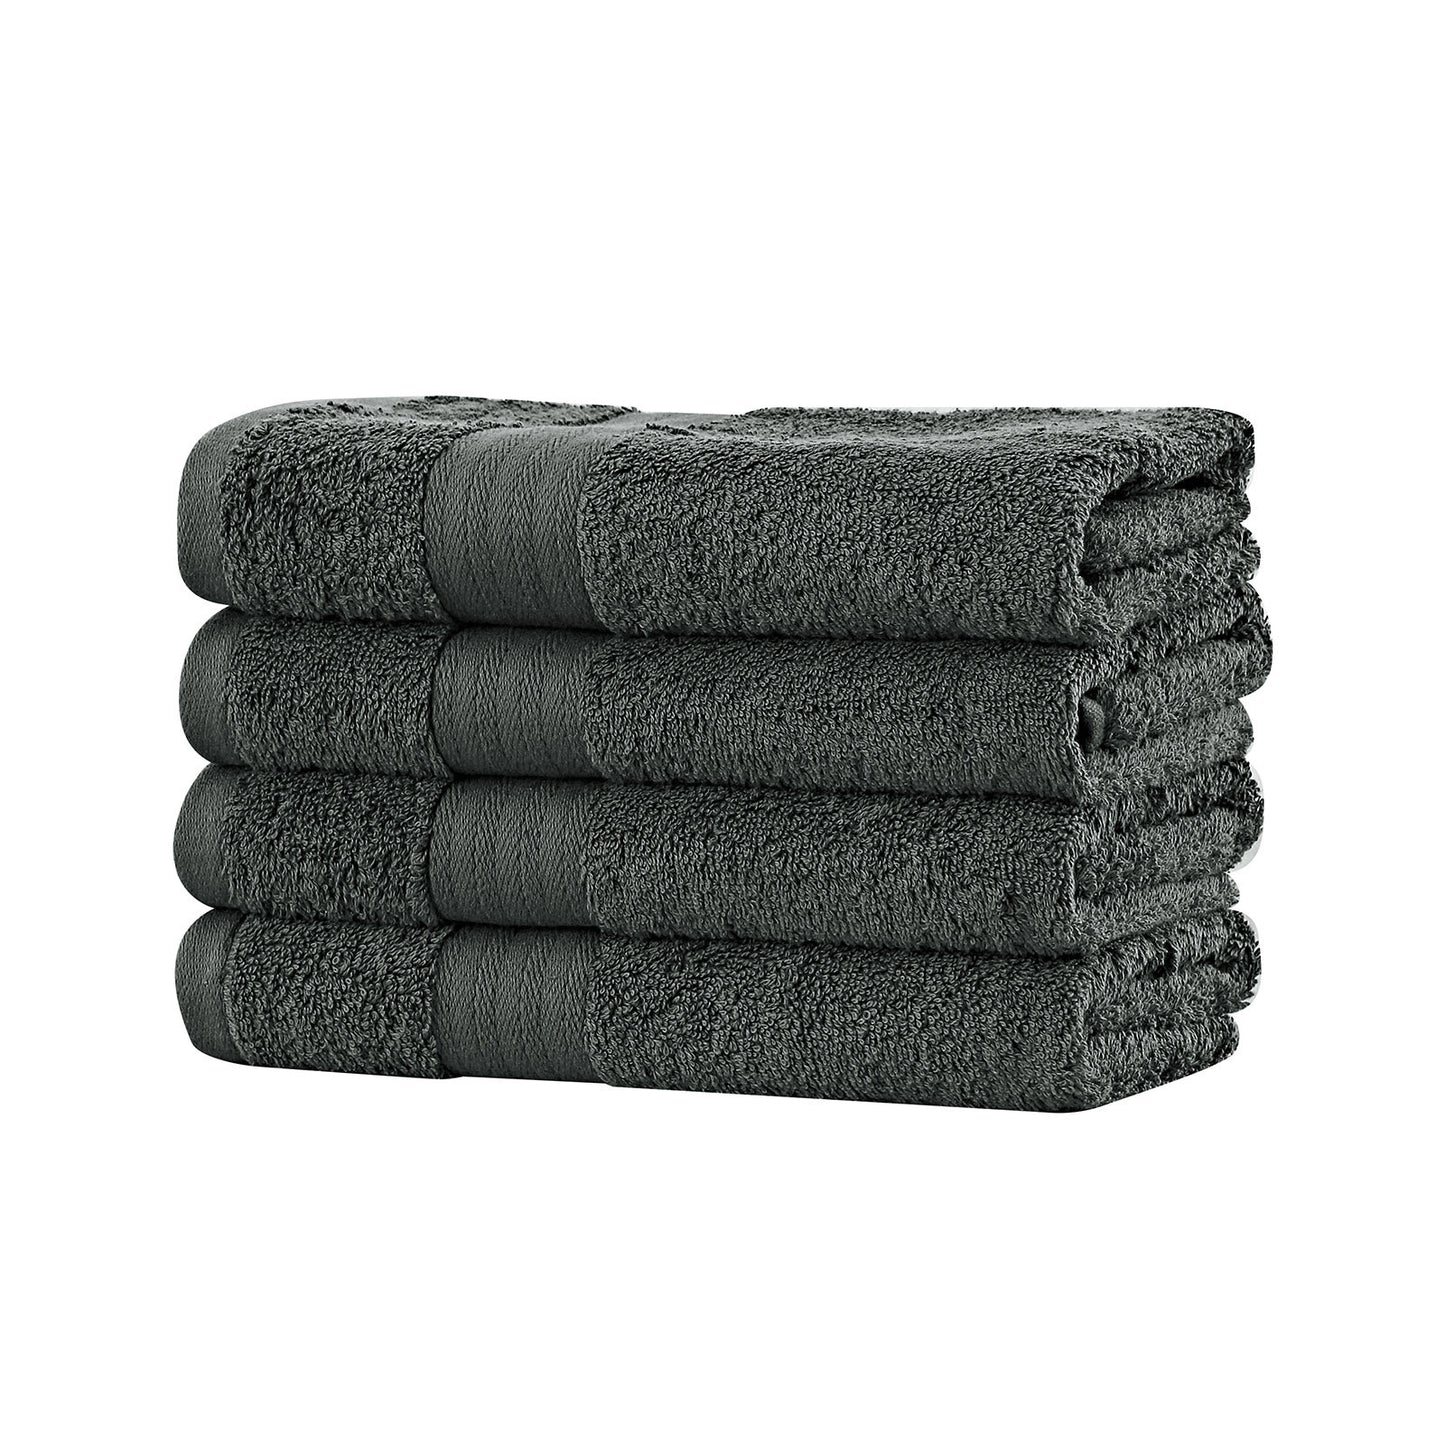 Linenland Bath Towel 4 Piece Cotton Hand Towels Set - Charcoal - BM House & Garden